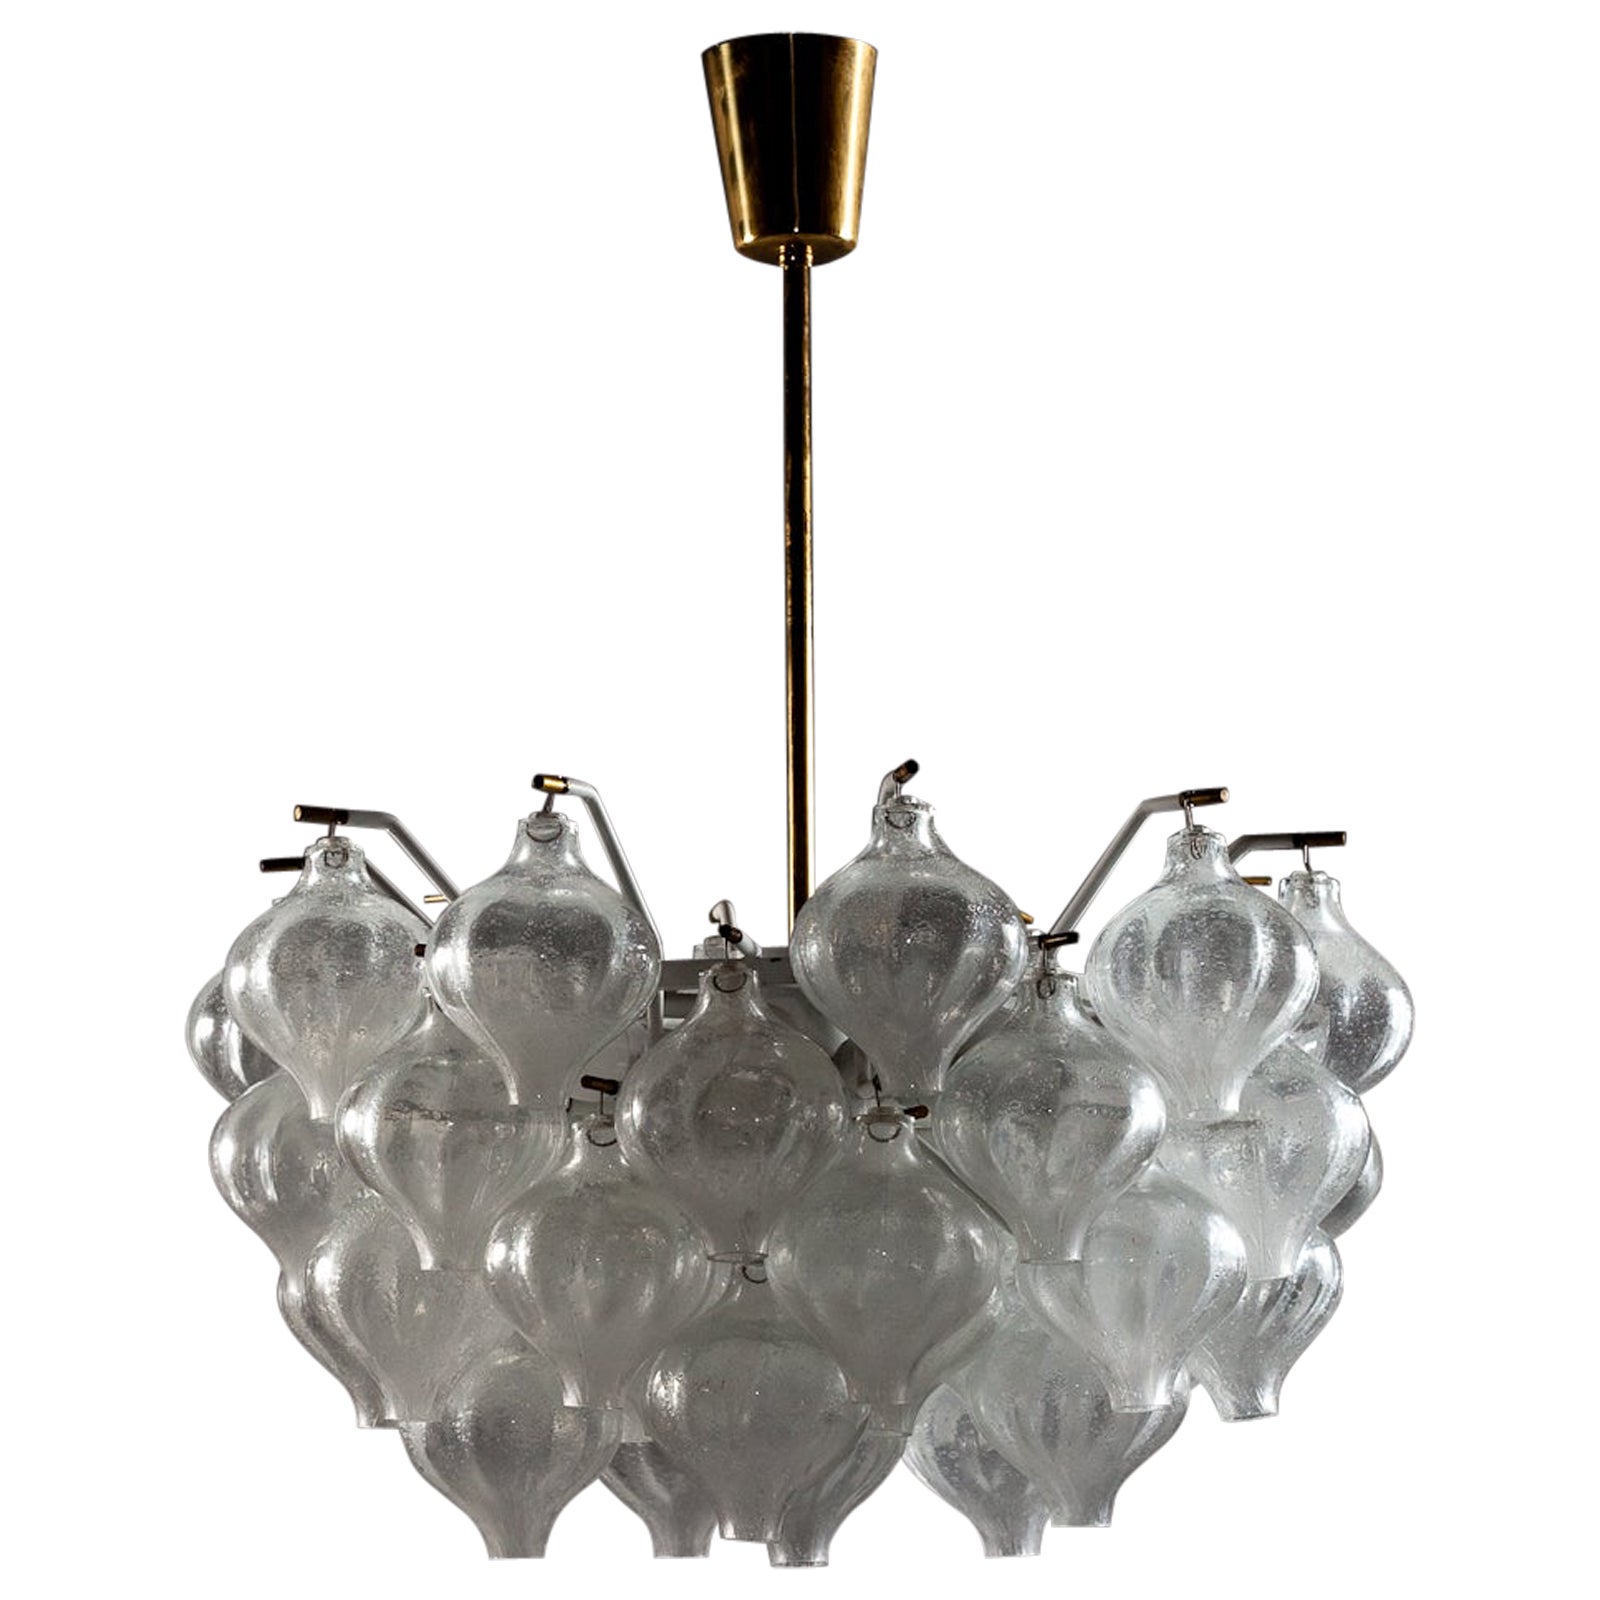 J.T. Kalmar 1960's Tulipan blown glass chandelier